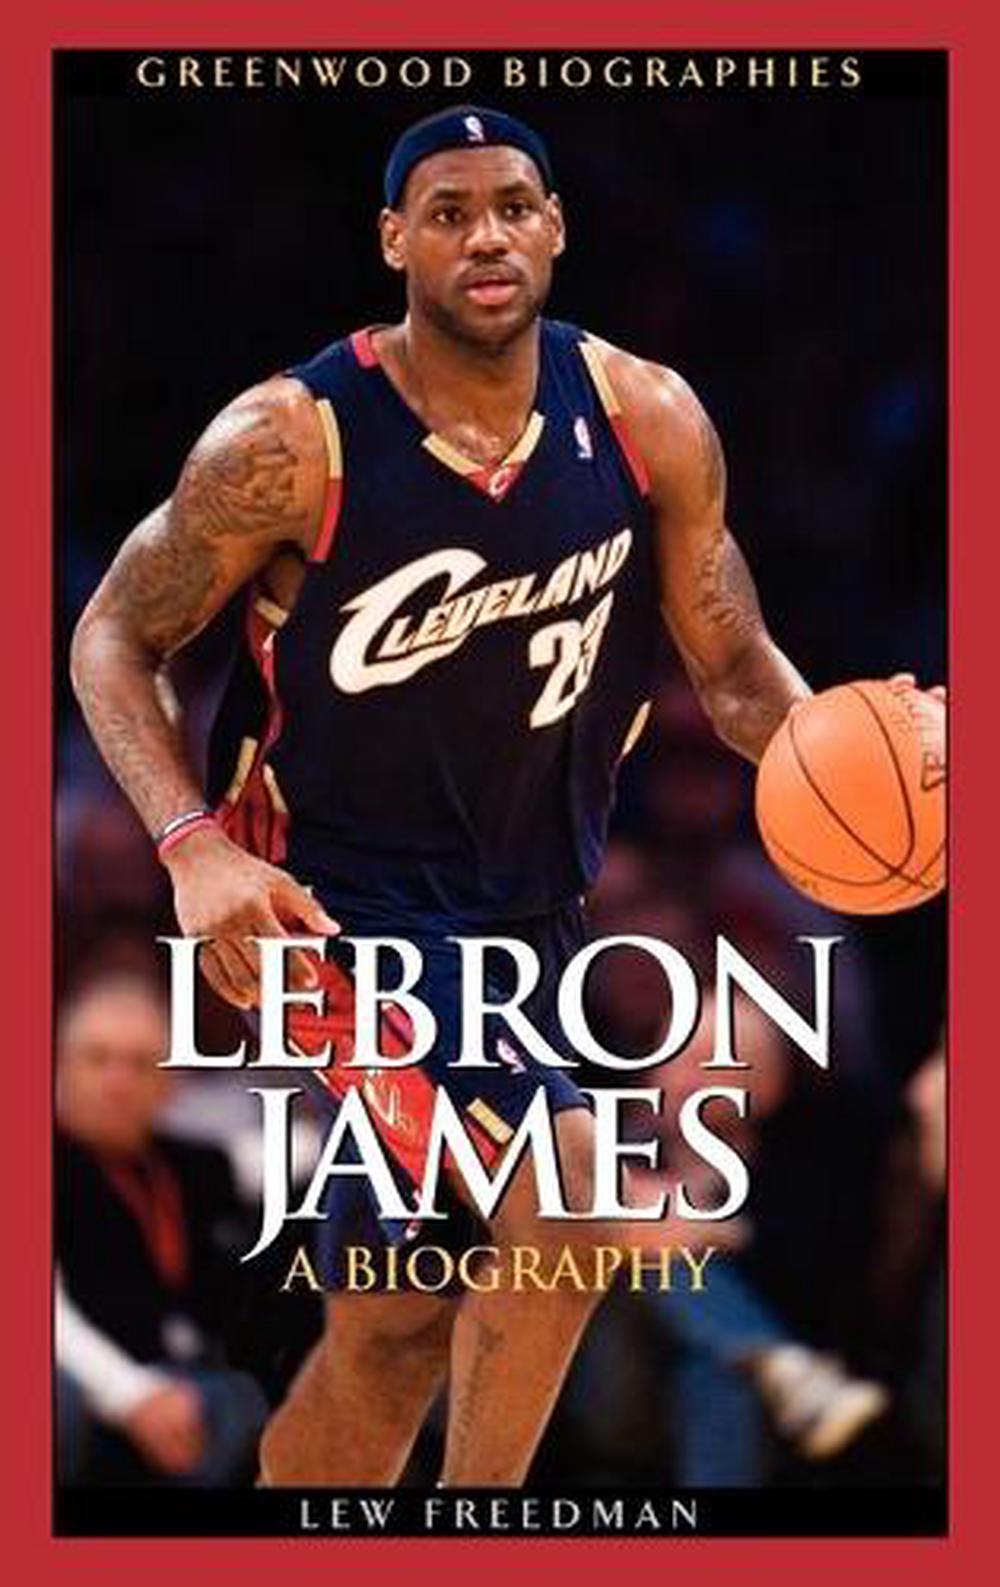 biography of lebron james